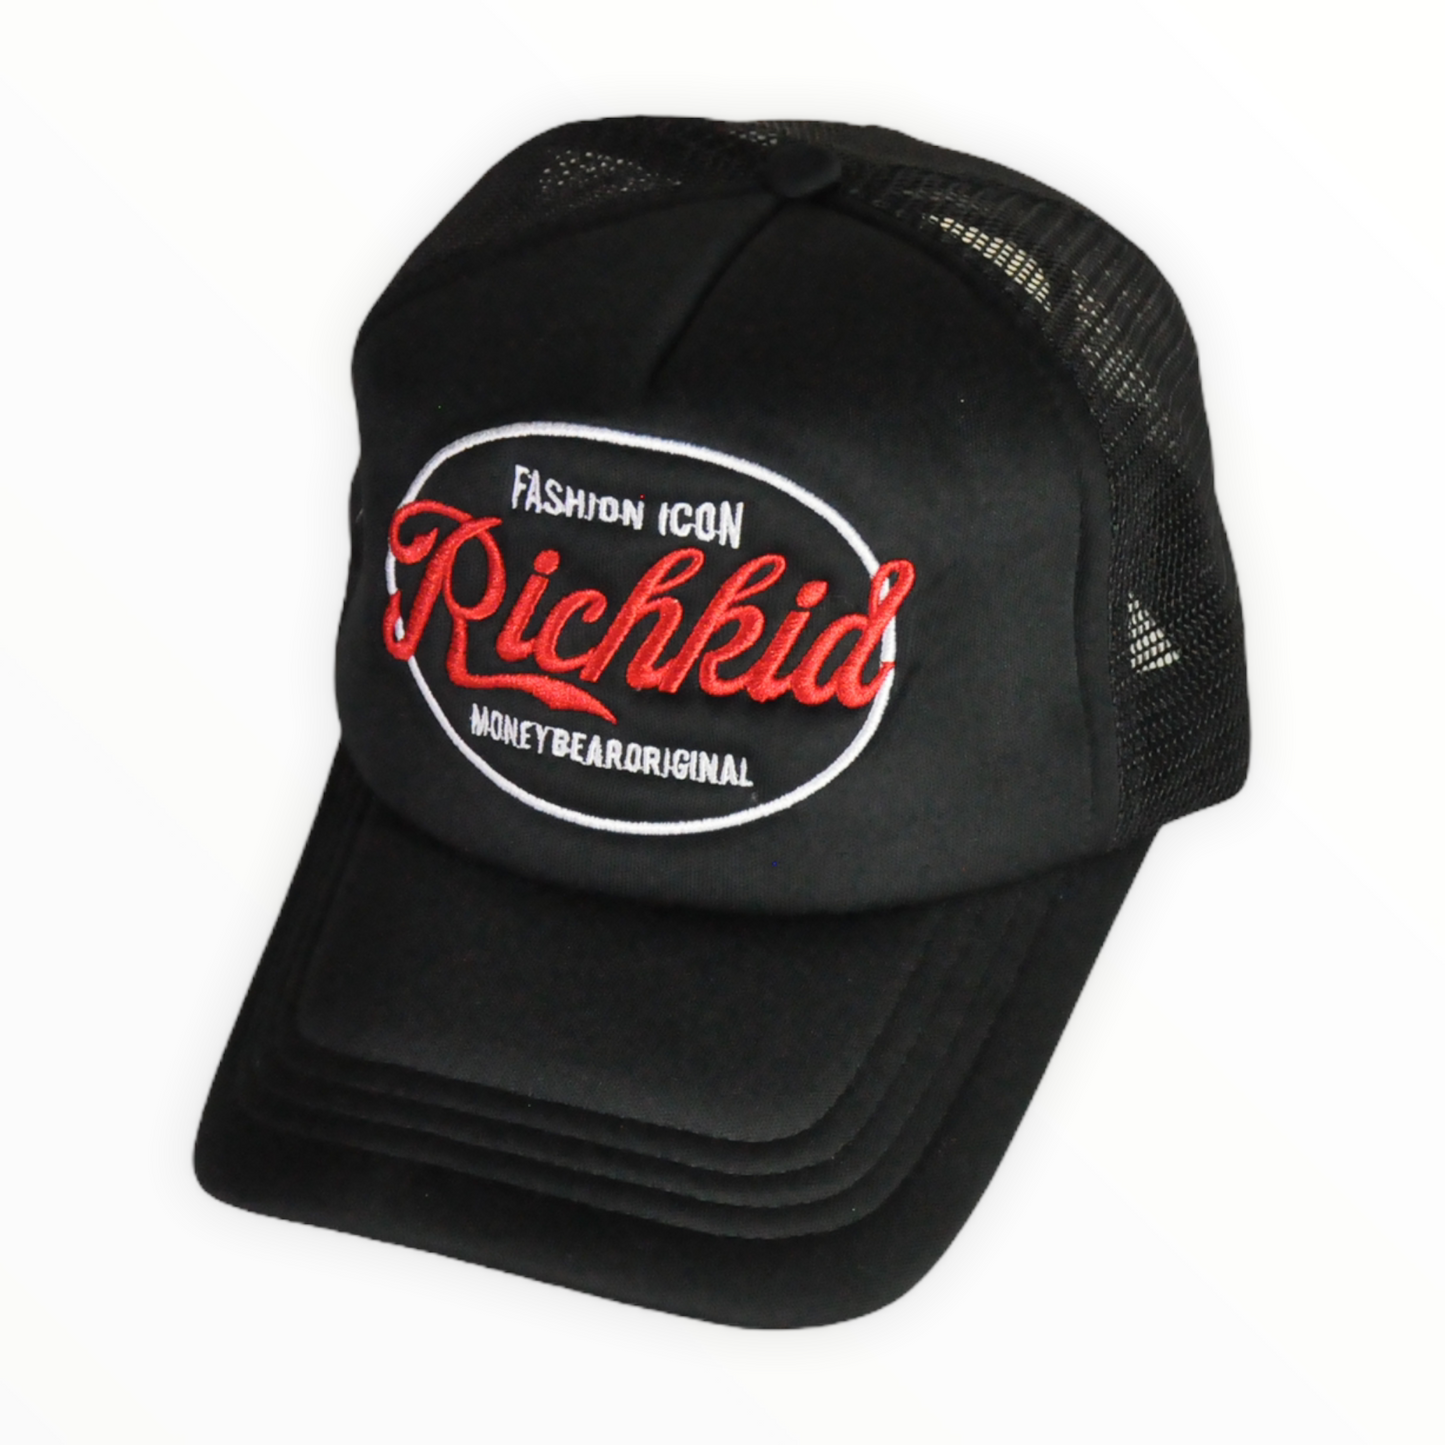 RKC "Fashion Icon" Trucker Hat